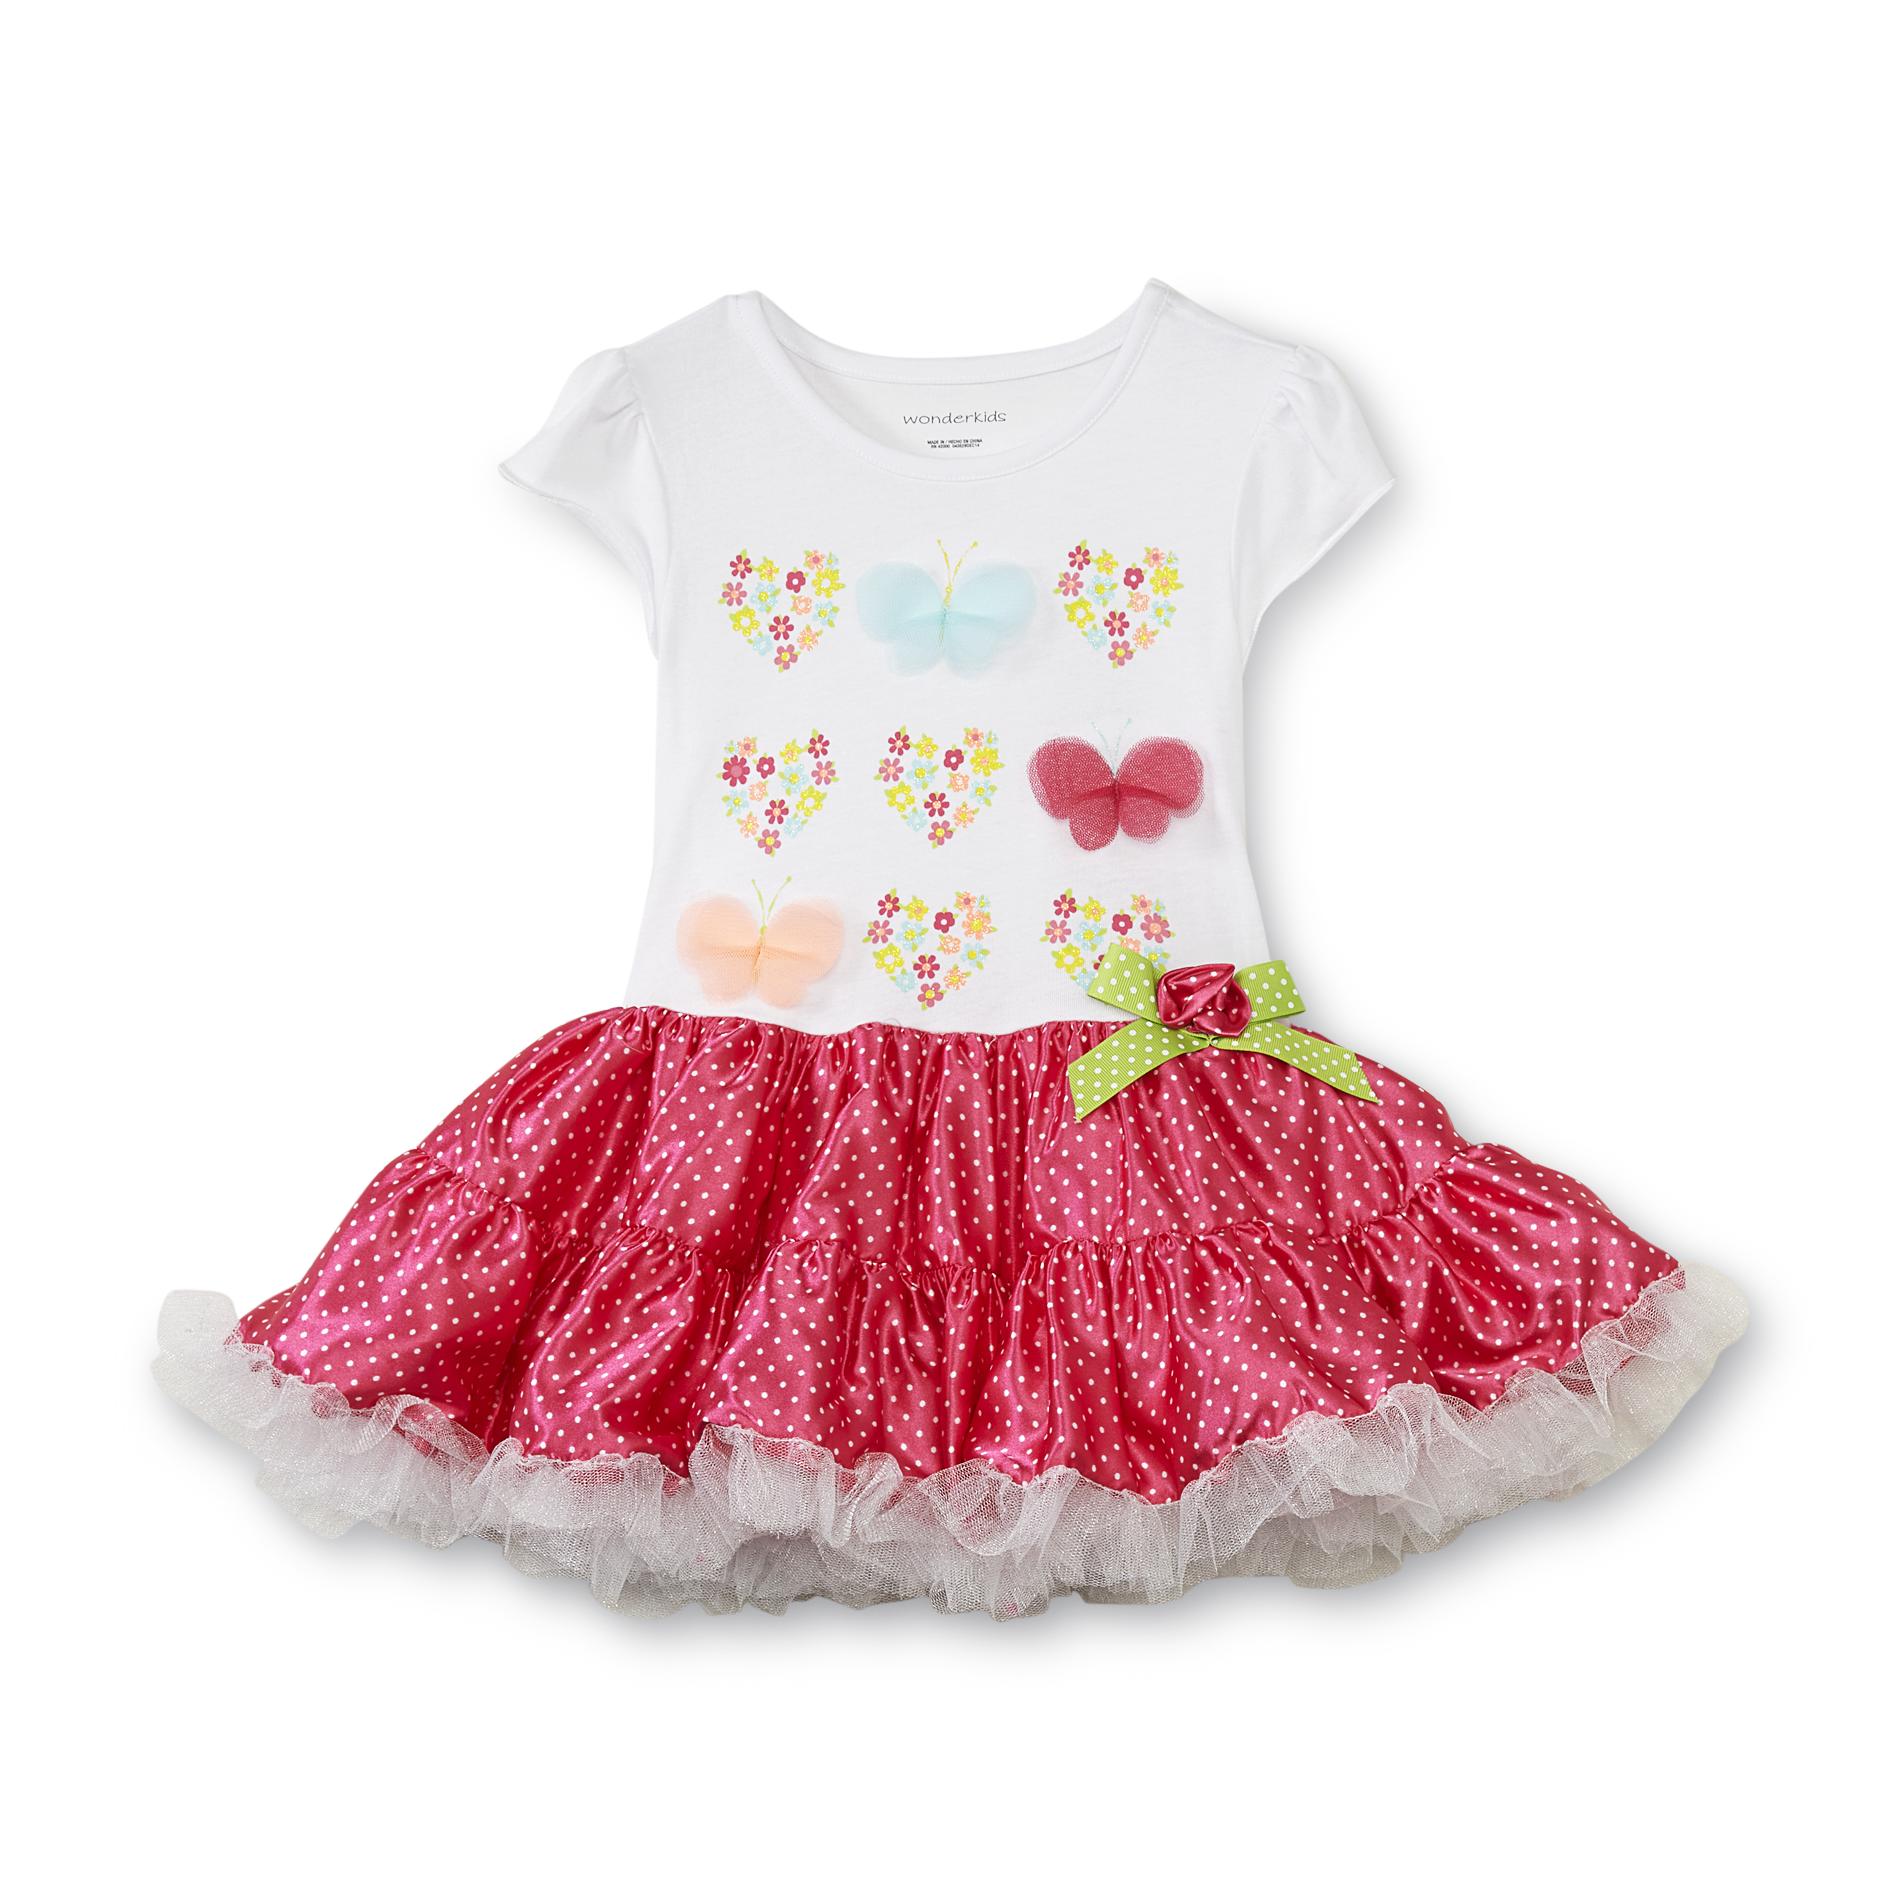 WonderKids Toddler Girl's Tutu Dress - Hearts & Butterflies